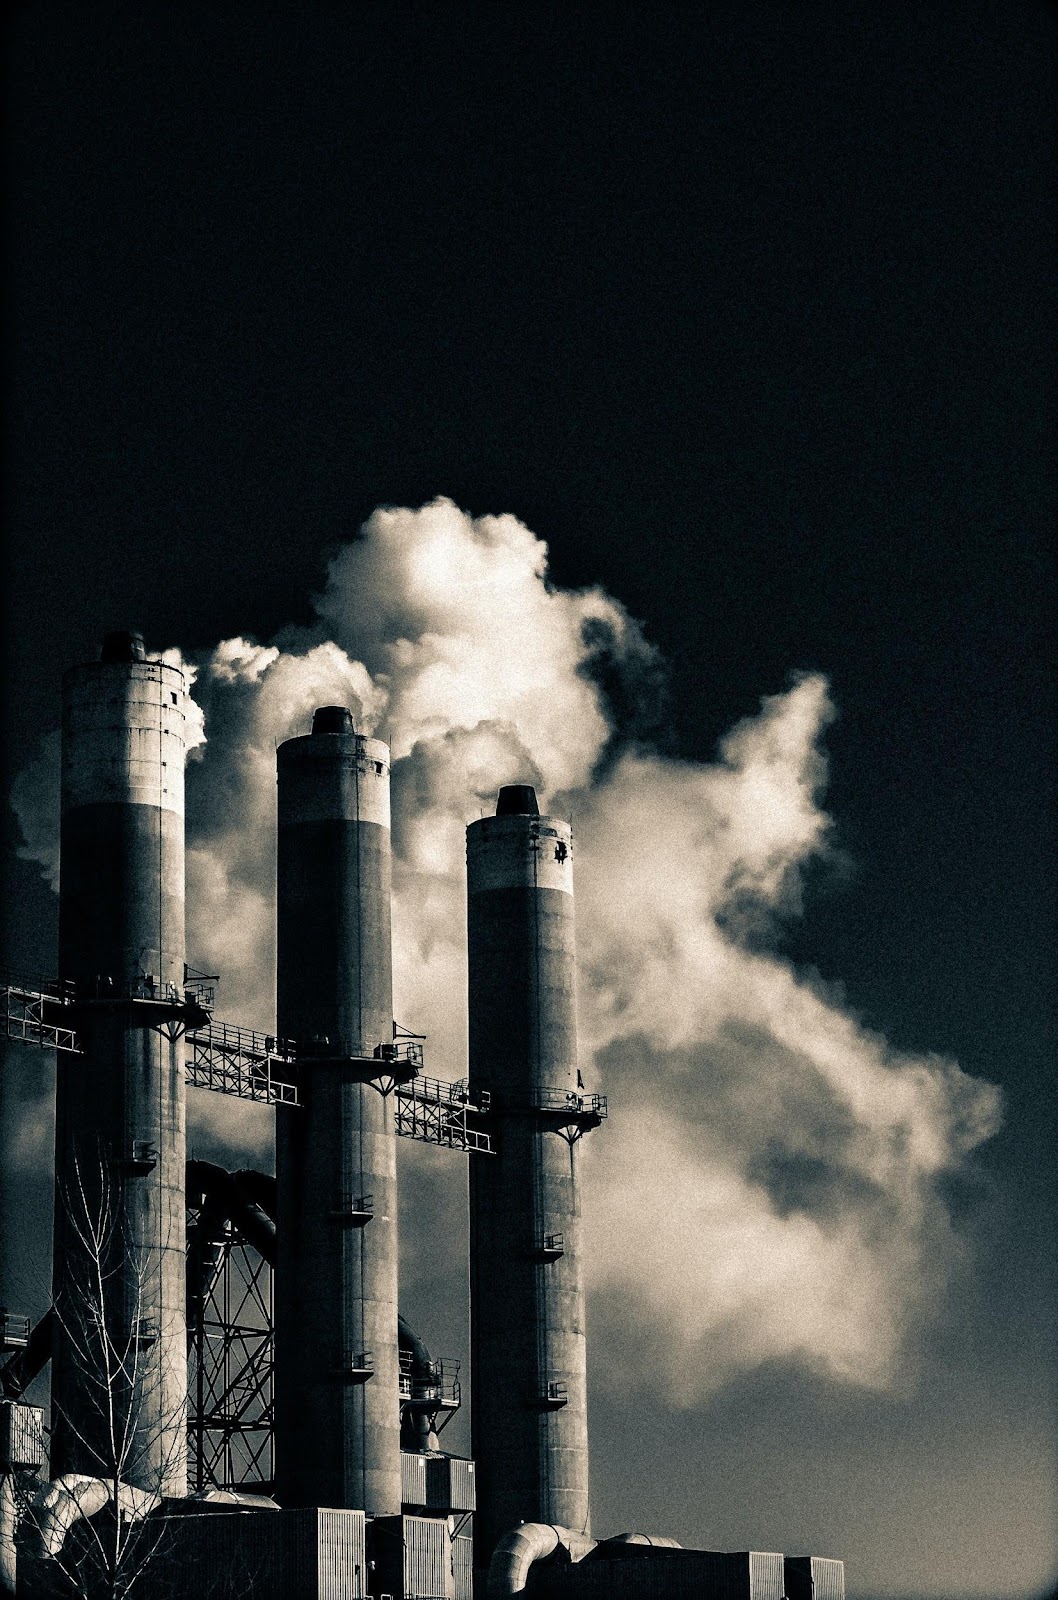  Smoke erupting factories